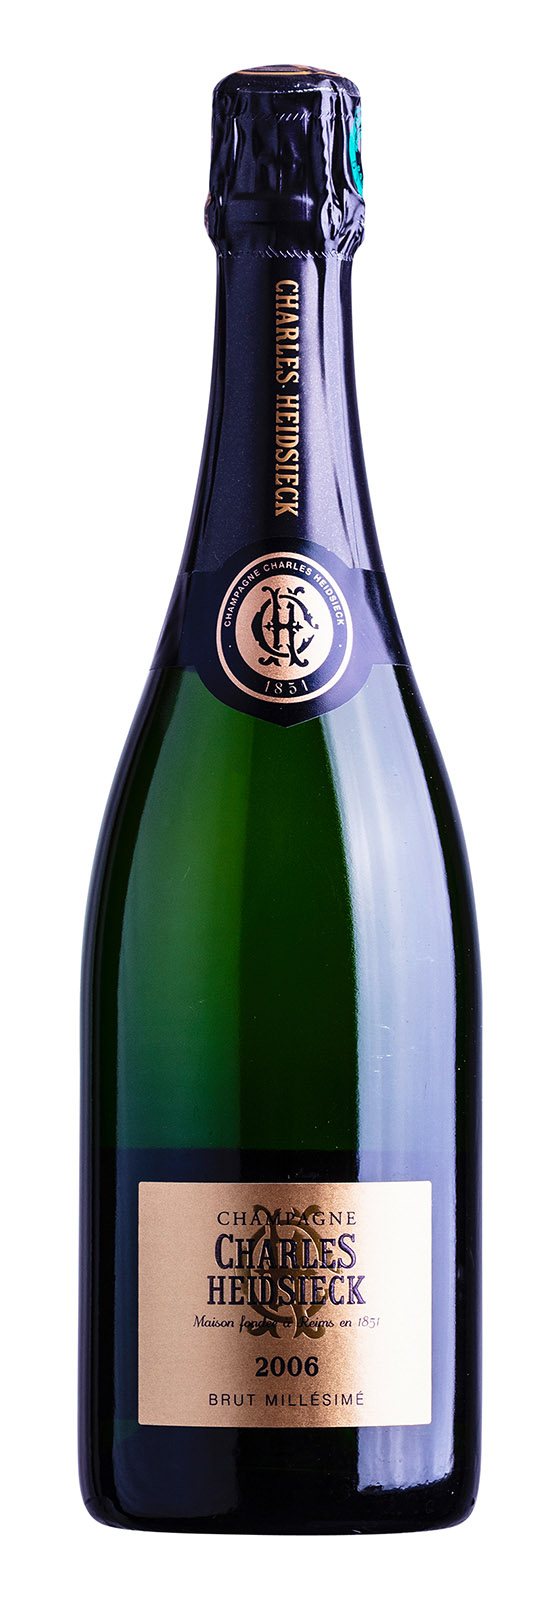 Champagne AOC Brut Millésimé 2006